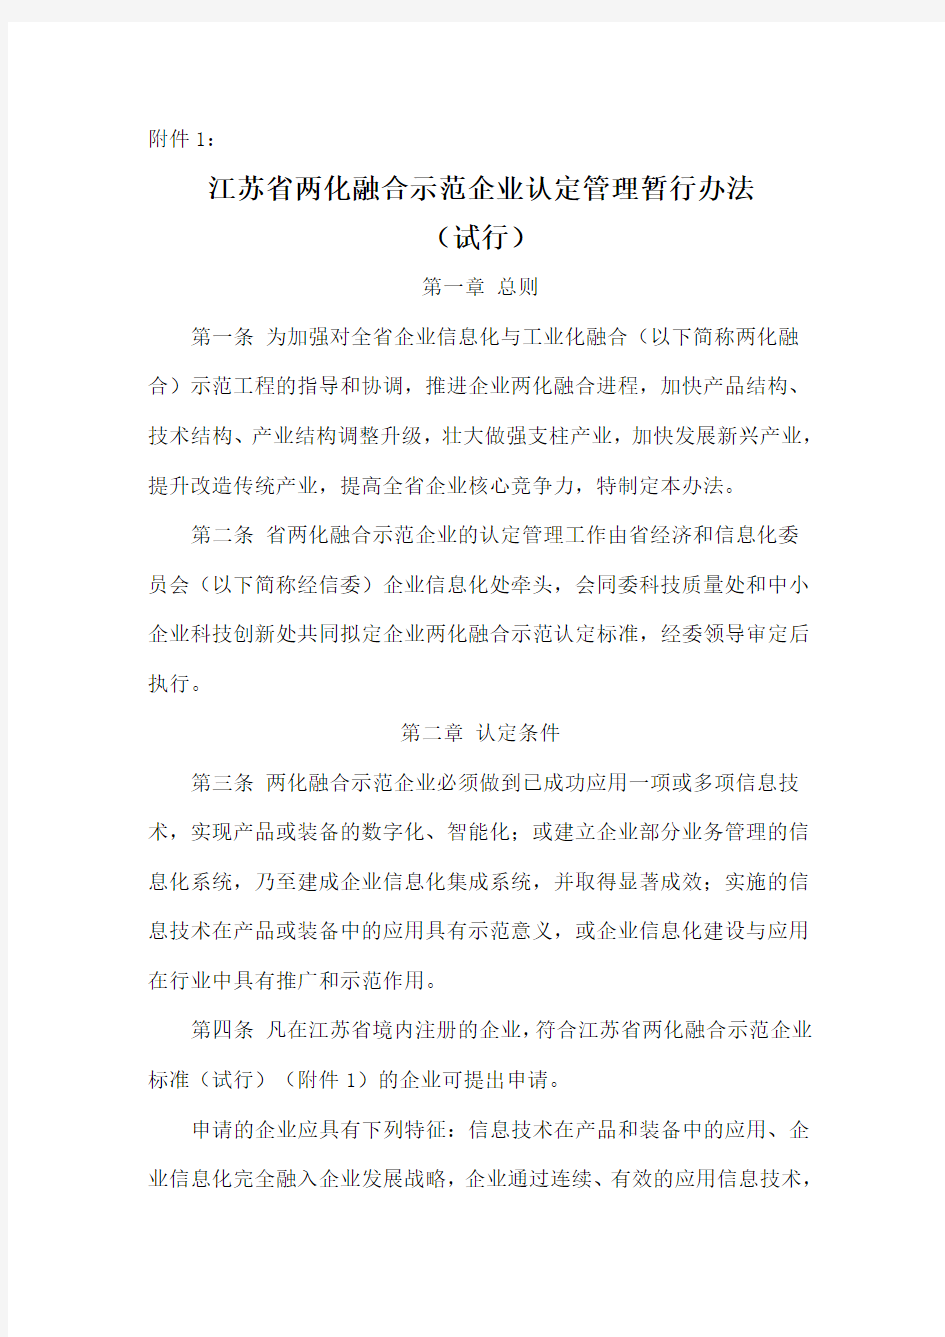 江苏省两化融合示范企业认定管理暂行办法(试行)